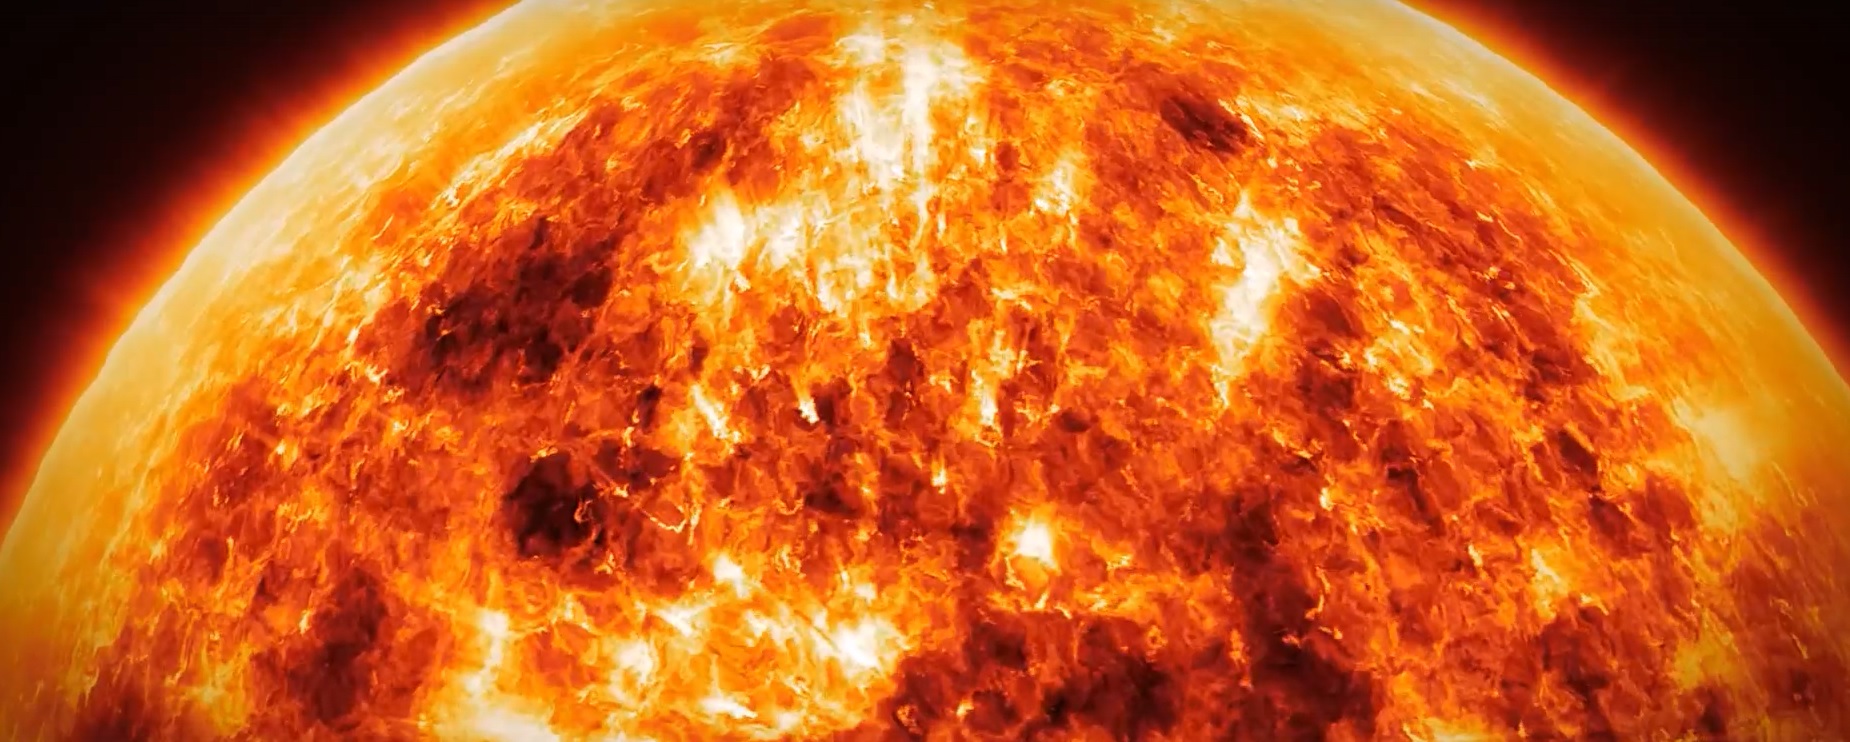 Сергей Язев: на Солнце произошла самая мощная вспышка за 7 лет